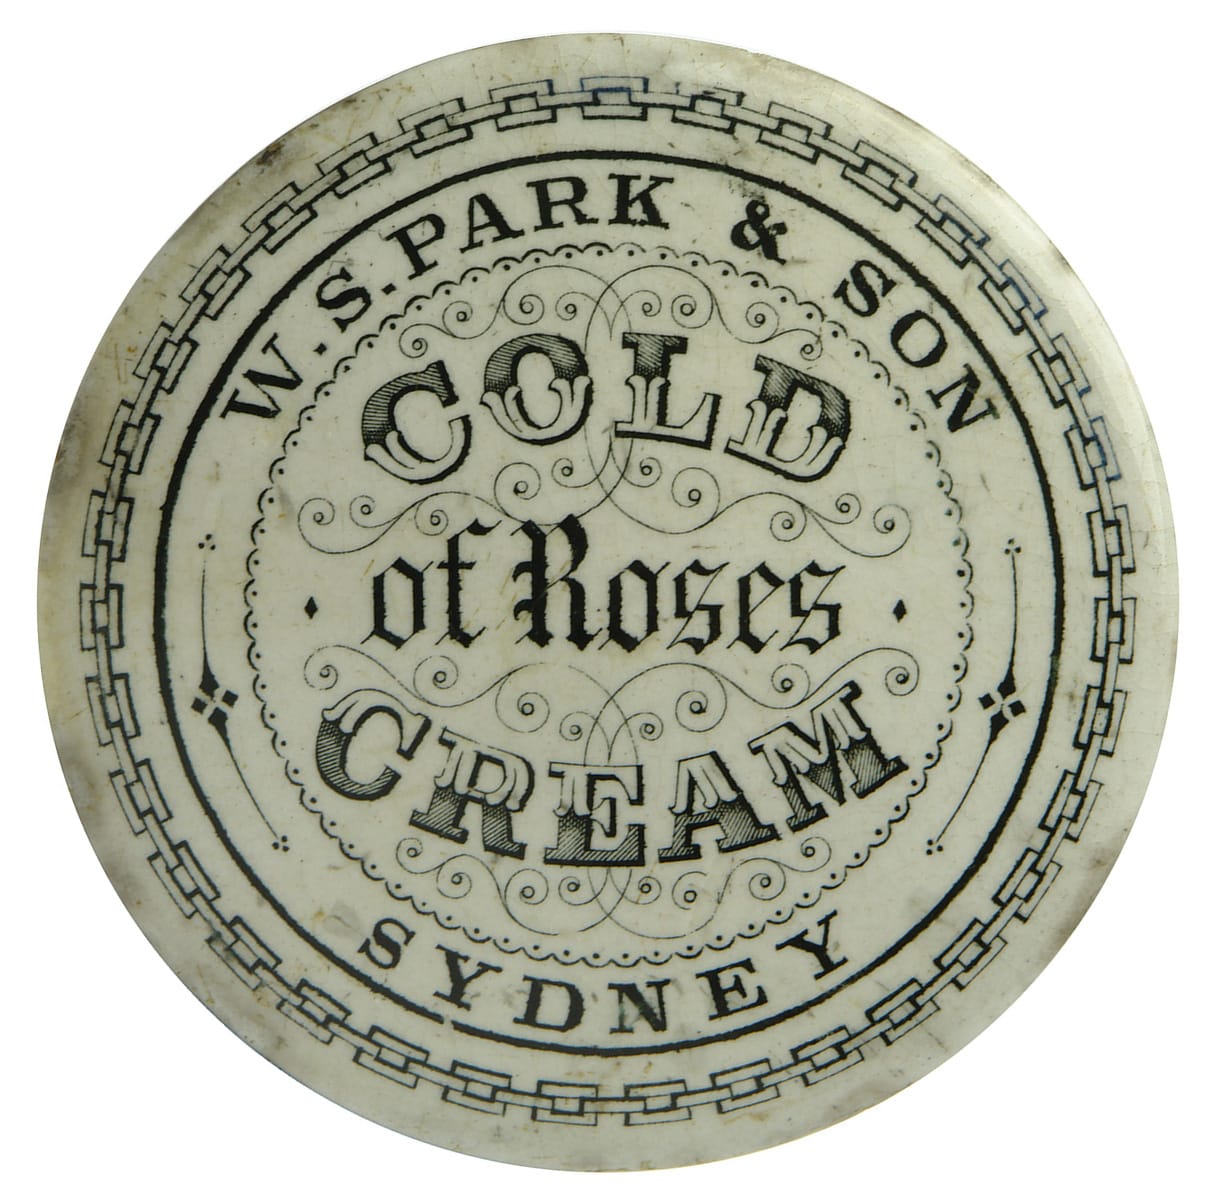 Park Son Cold Cream Sydney Pot Lid